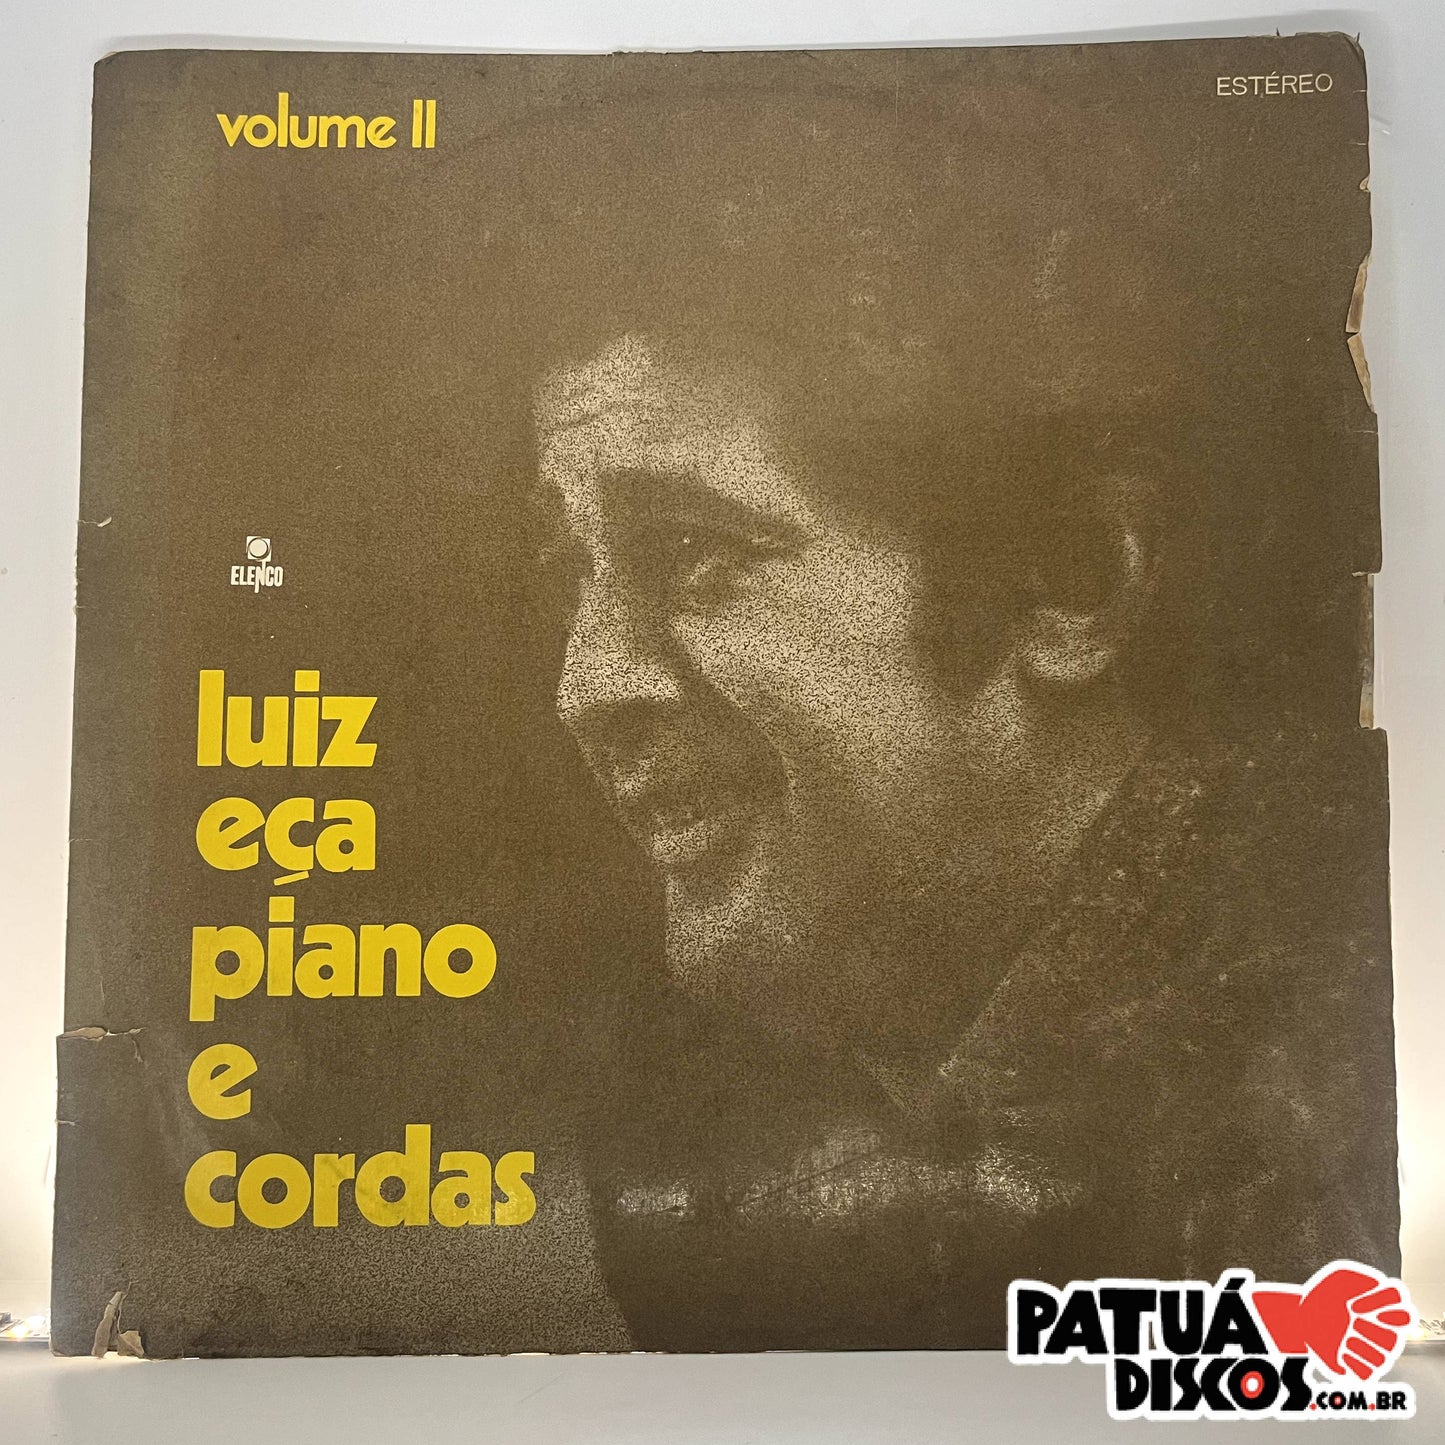 Luiz Eça - Piano E Cordas Volume II - LP